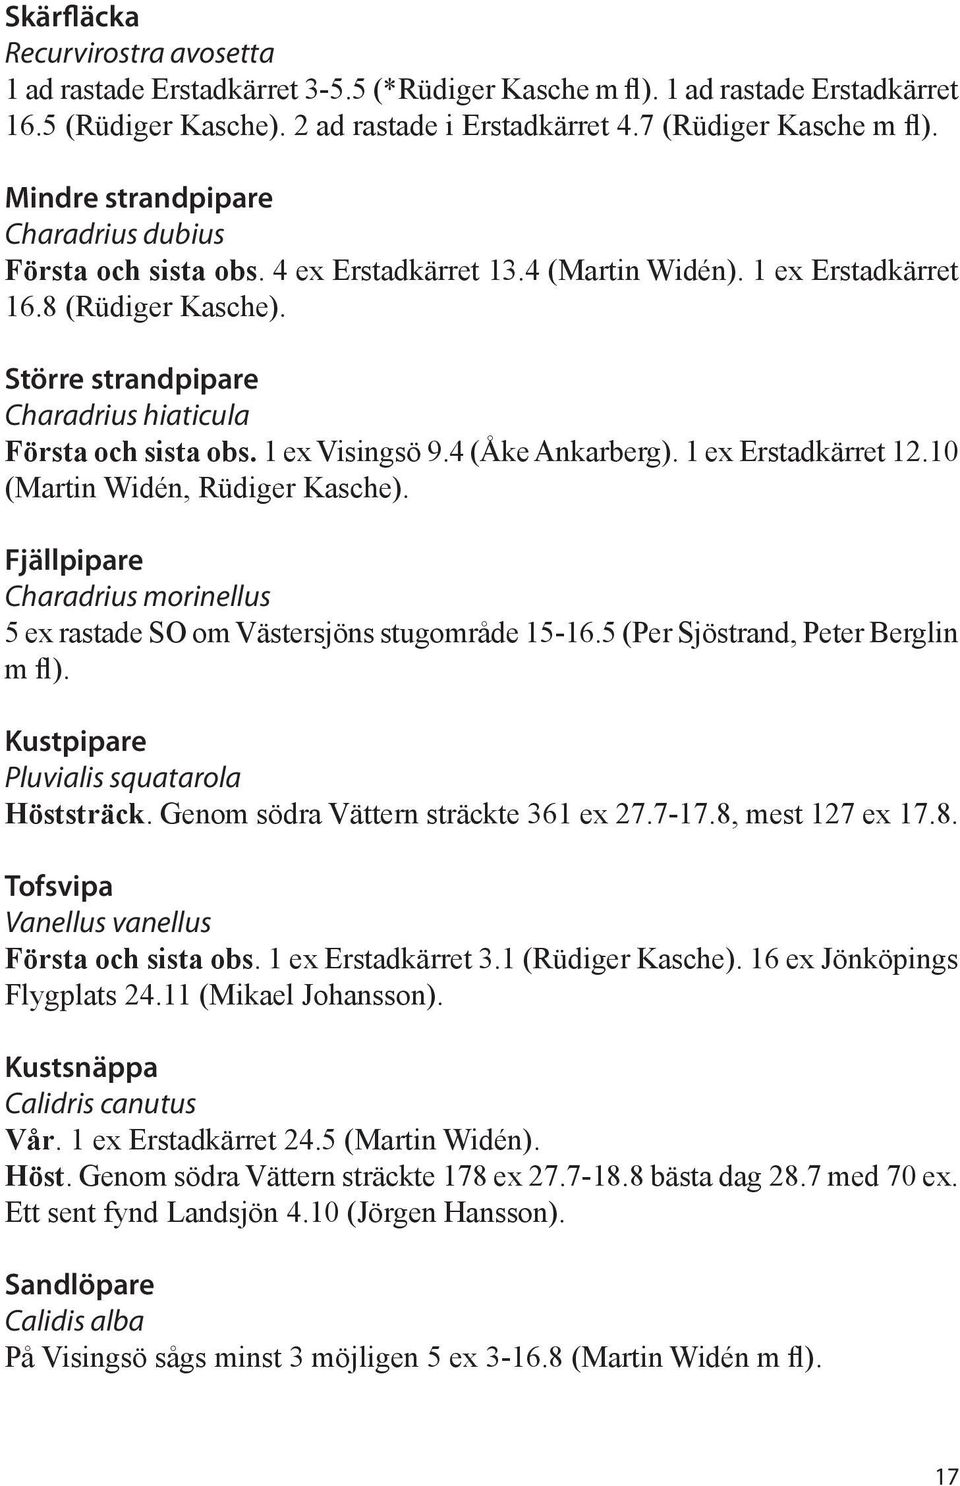 Större strandpipare Charadrius hiaticula Första och sista obs. 1 ex Visingsö 9.4 (Åke Ankarberg). 1 ex Erstadkärret 12.10 (Martin Widén, Rüdiger Kasche).